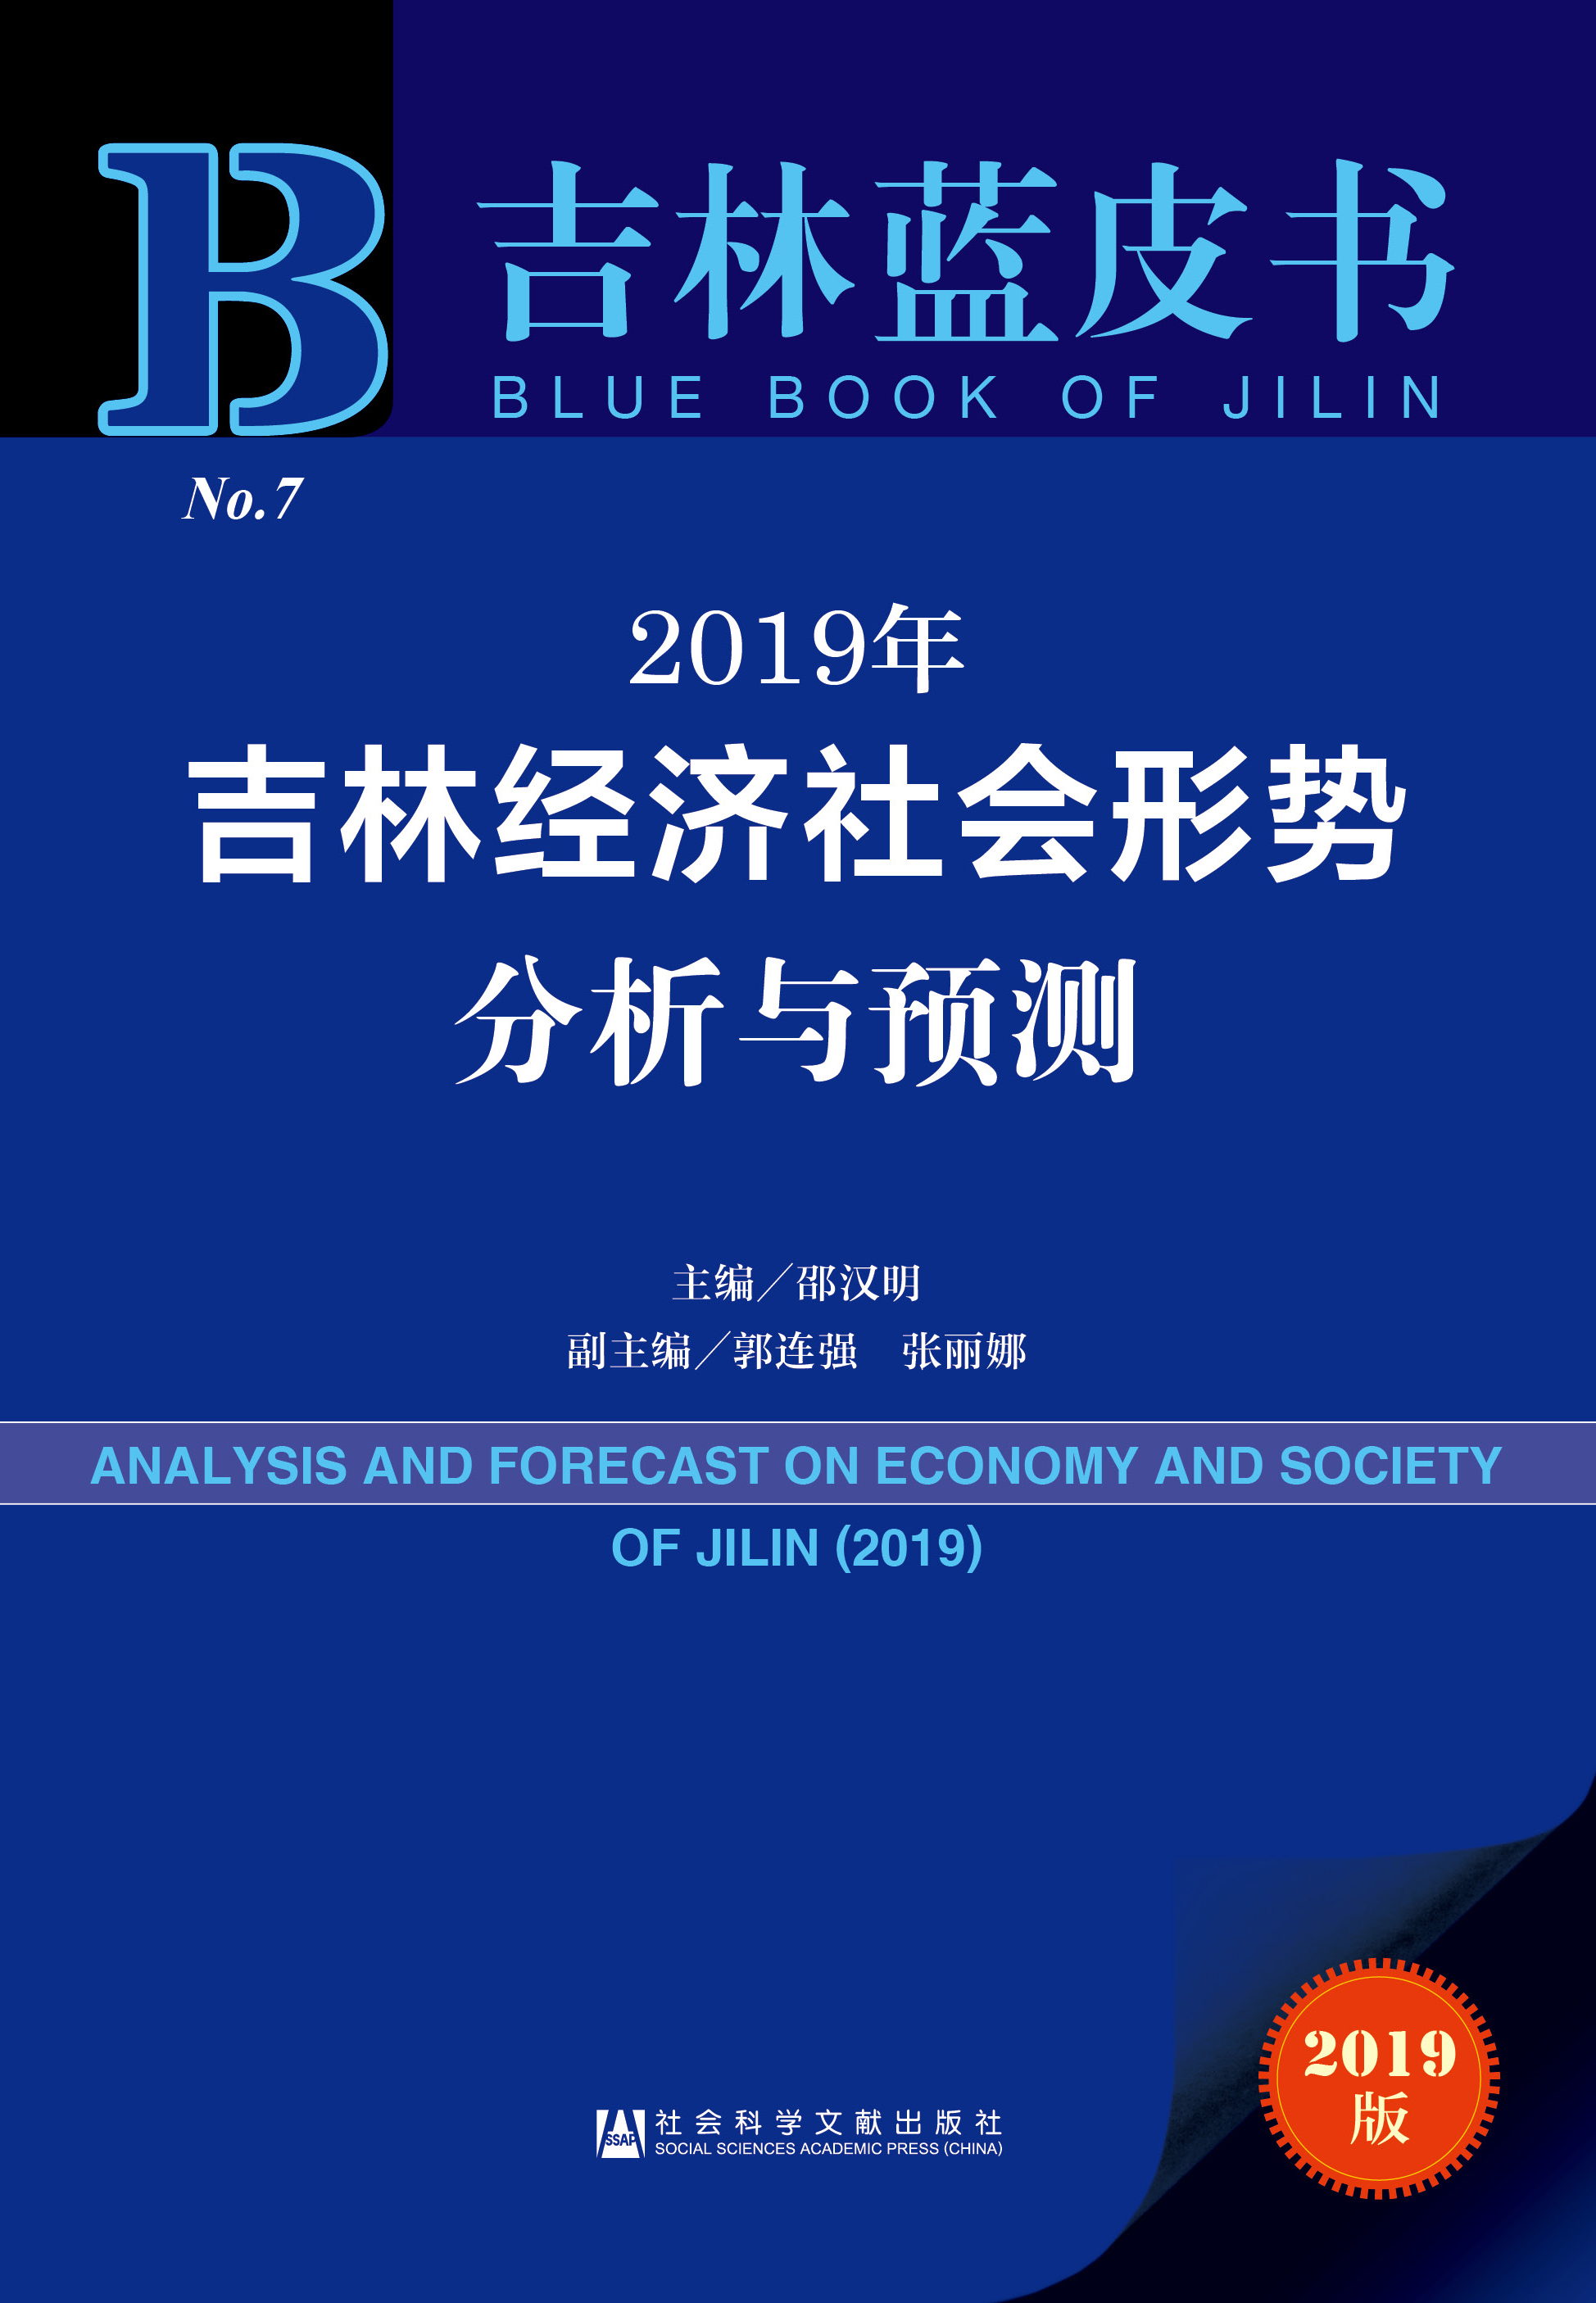 2019年吉林经济社会形势分析与预测